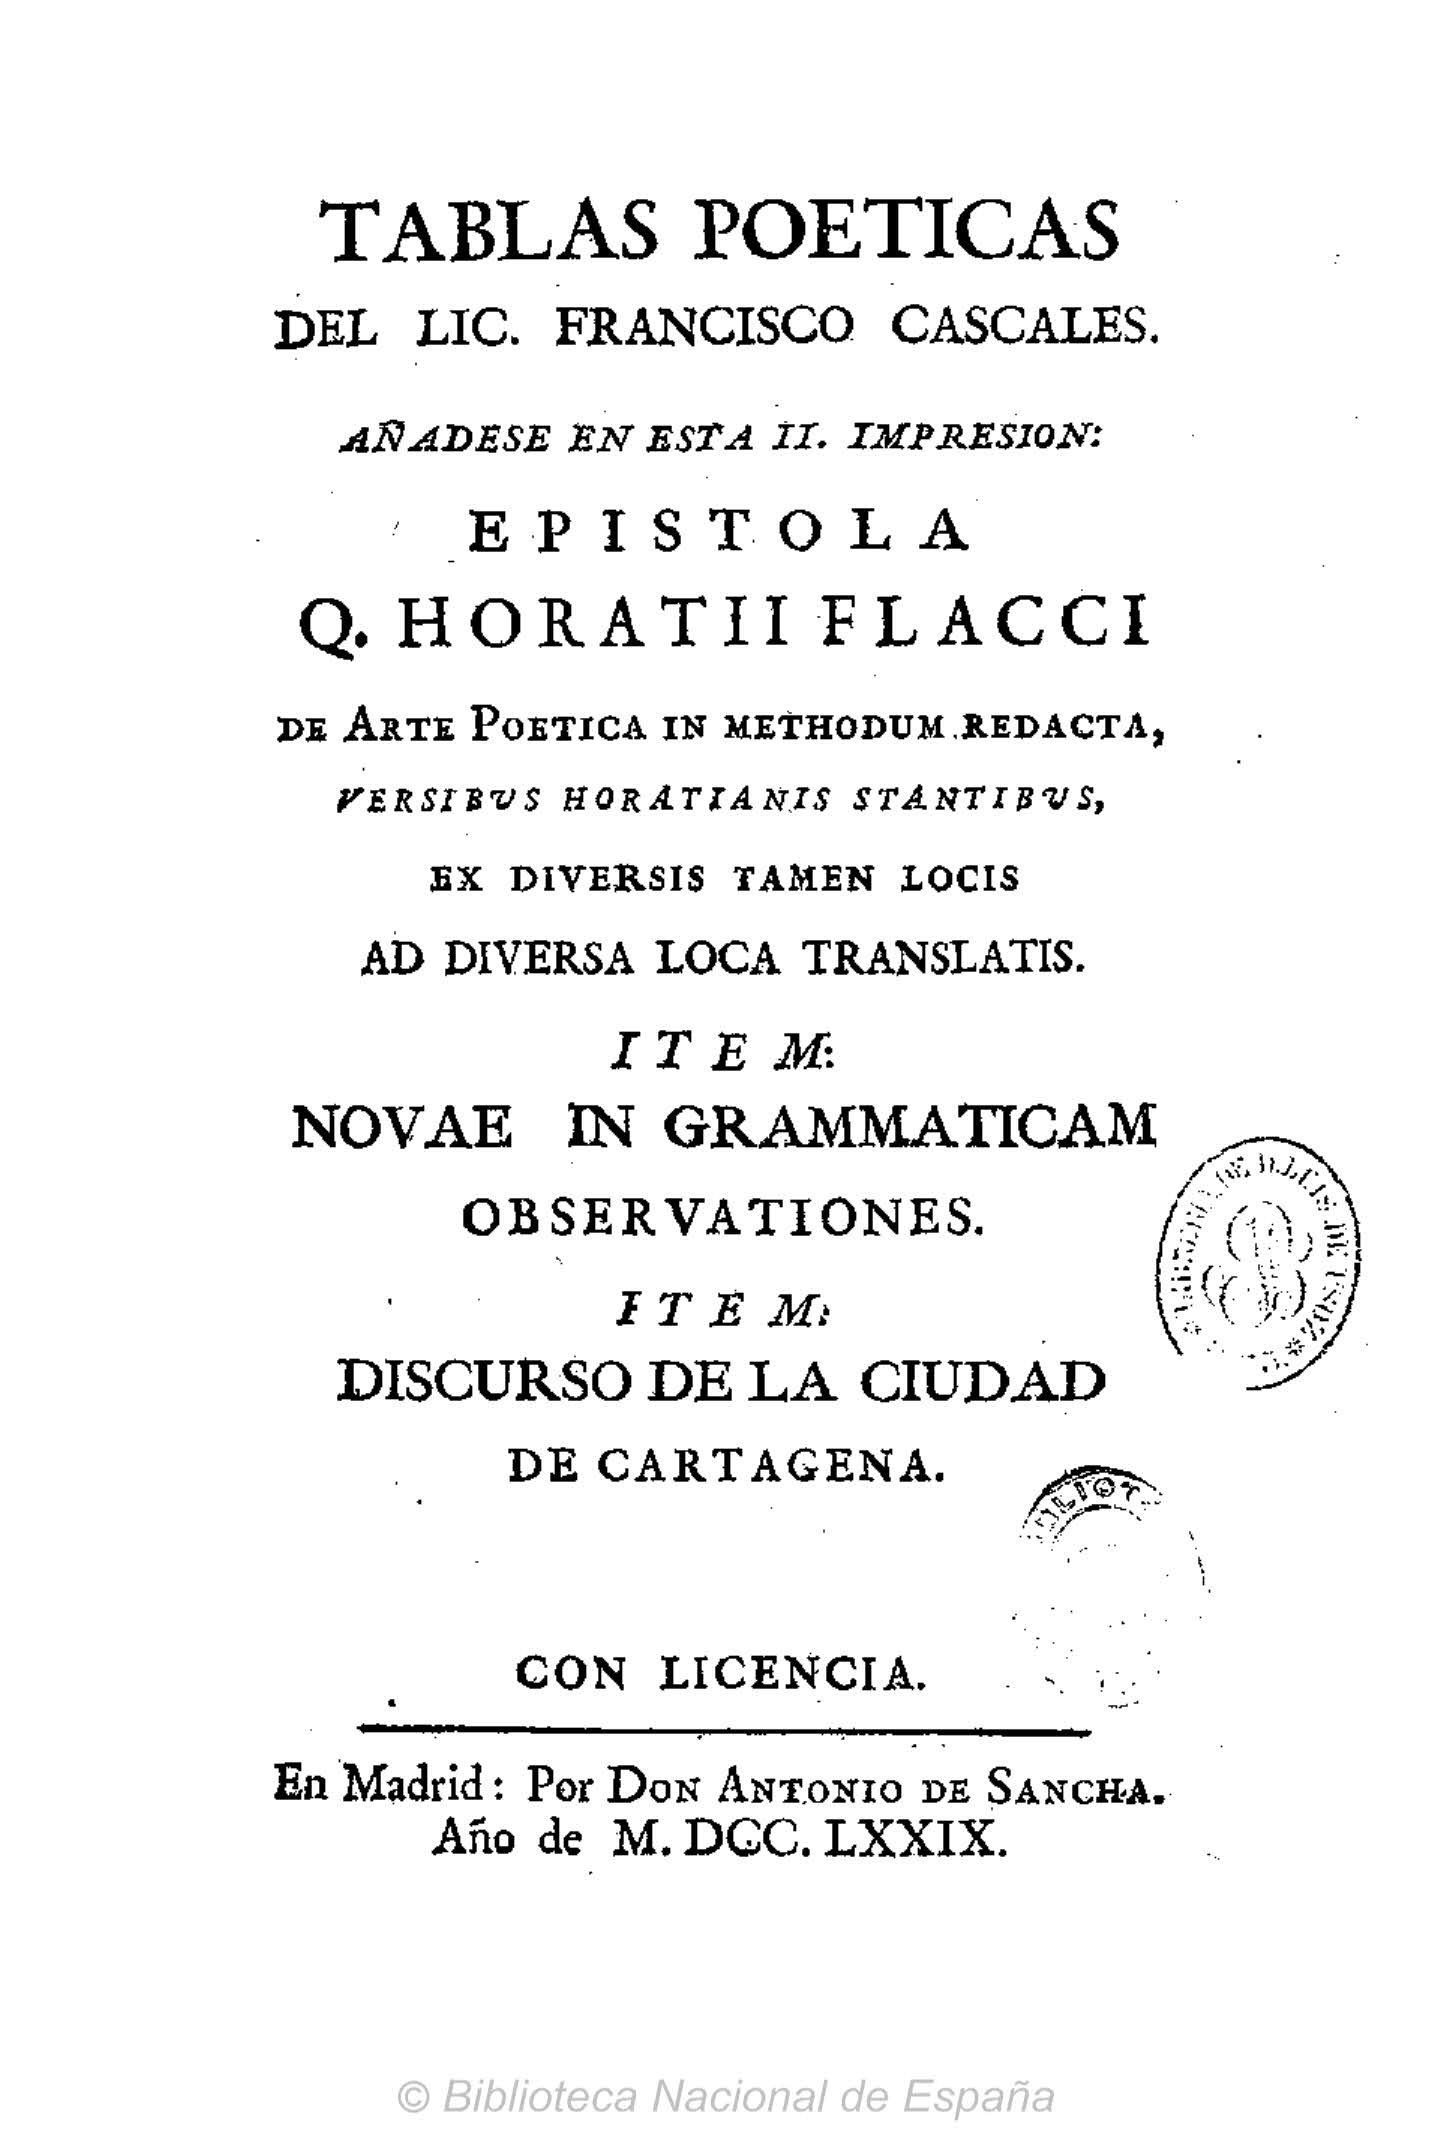 Tablas poéticas, añádese la Epístola Q. Horatii Flacci de Arte Poética